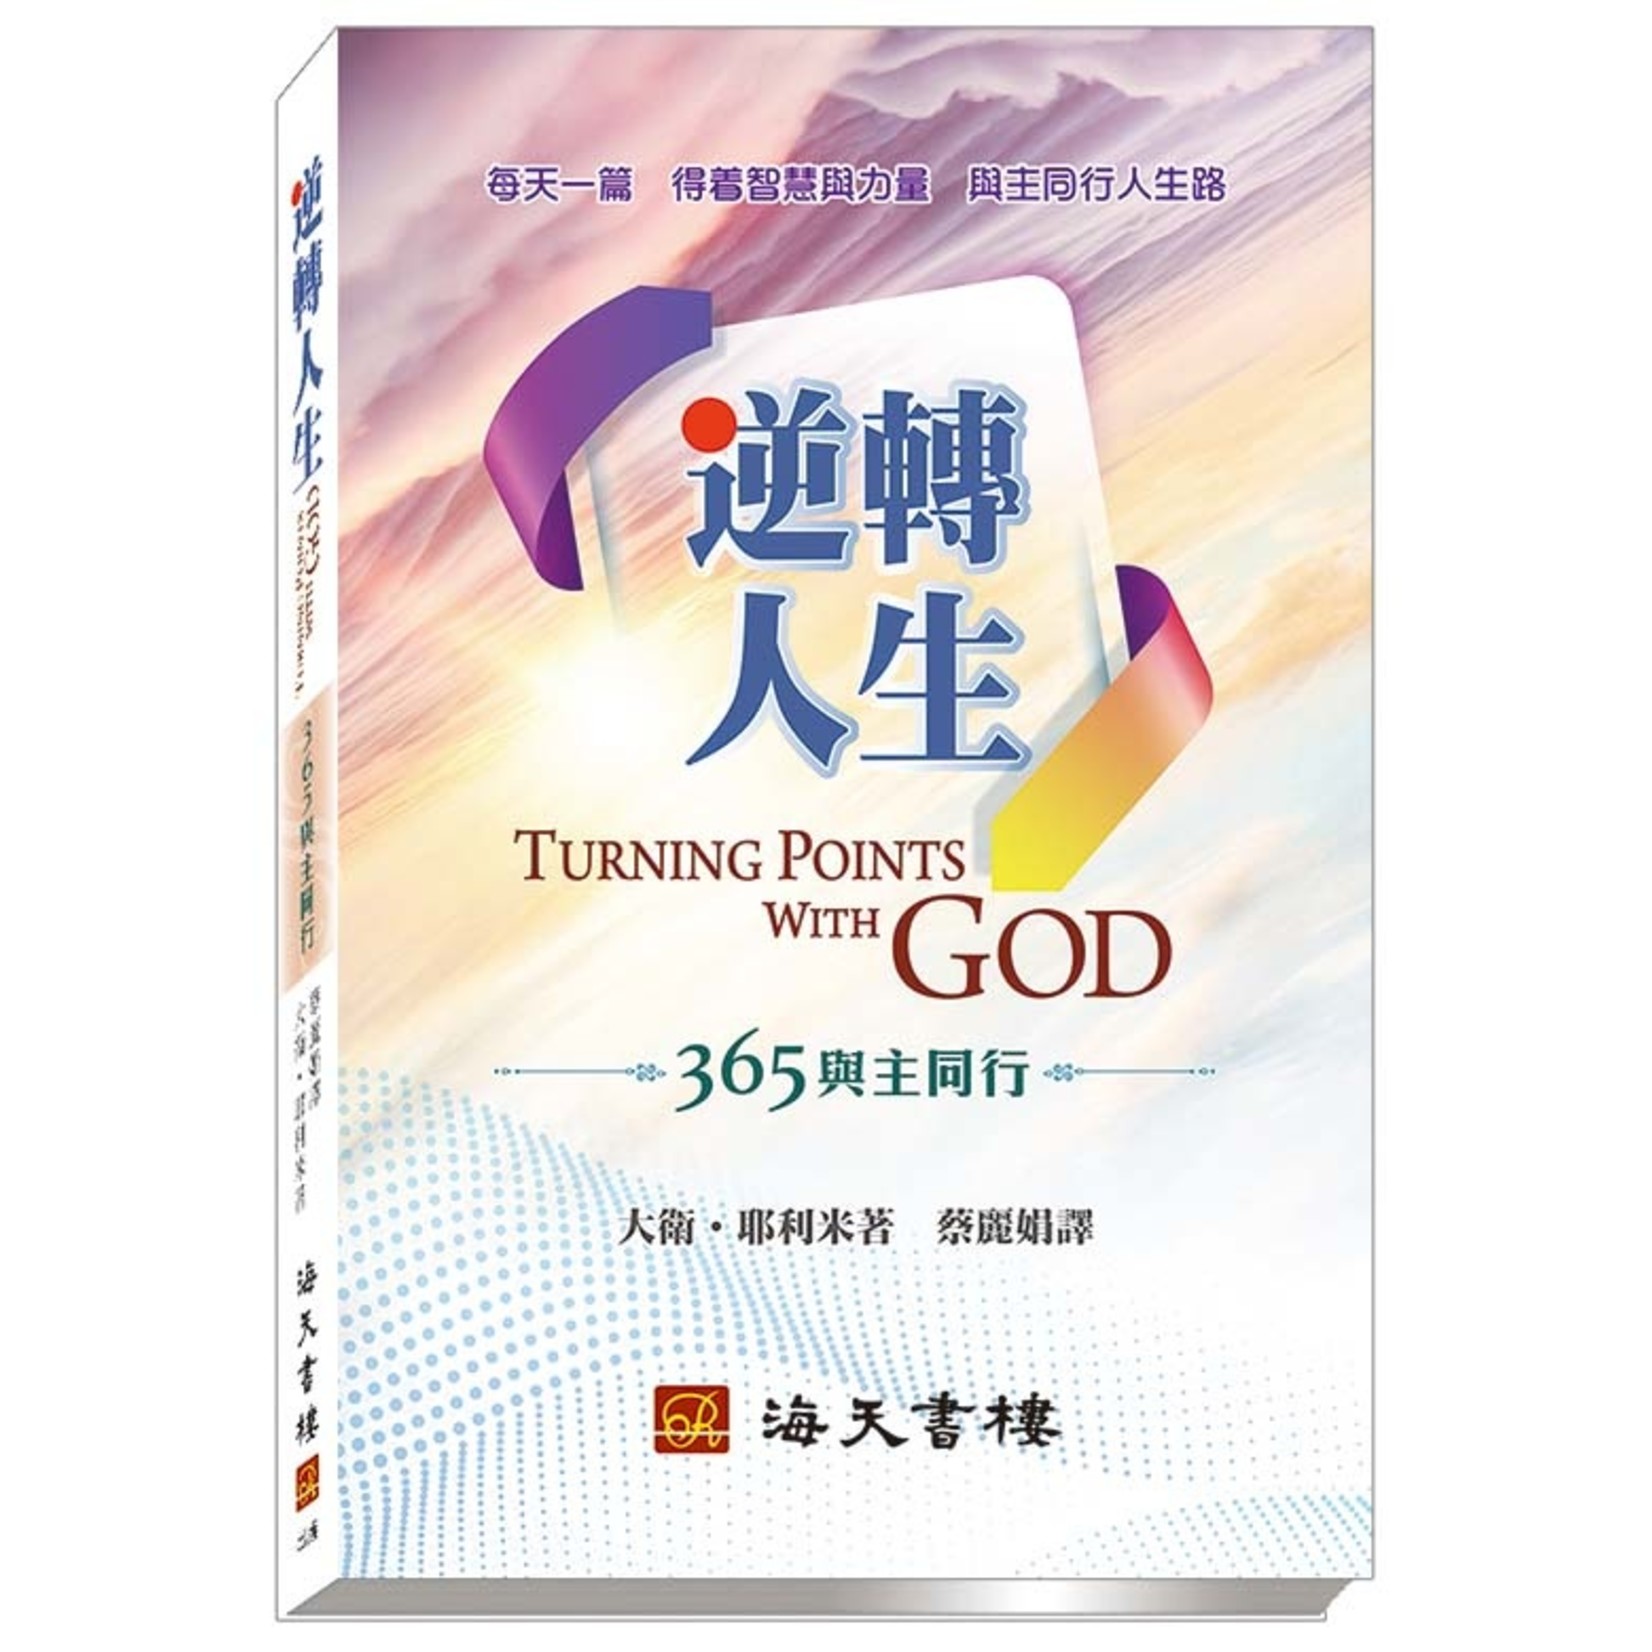 海天書樓 The Rock House Publishers 逆轉人生：365與主同行 Turning Points with God: 365 Daily Devotions